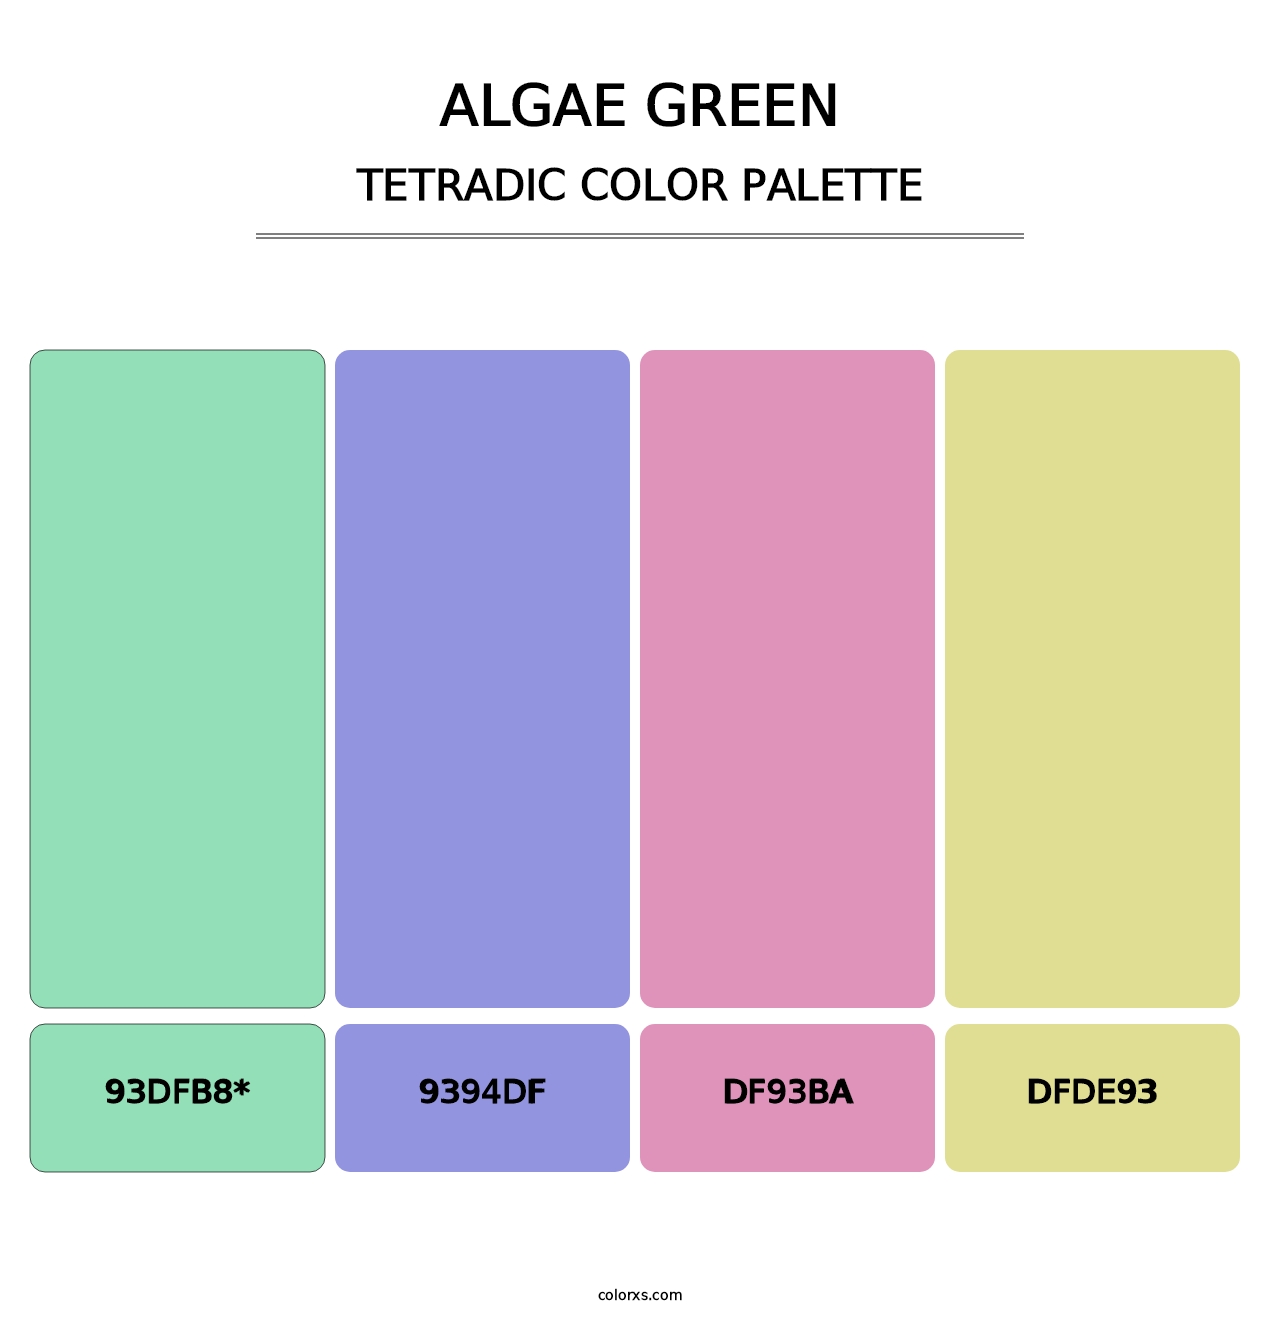 Algae Green - Tetradic Color Palette